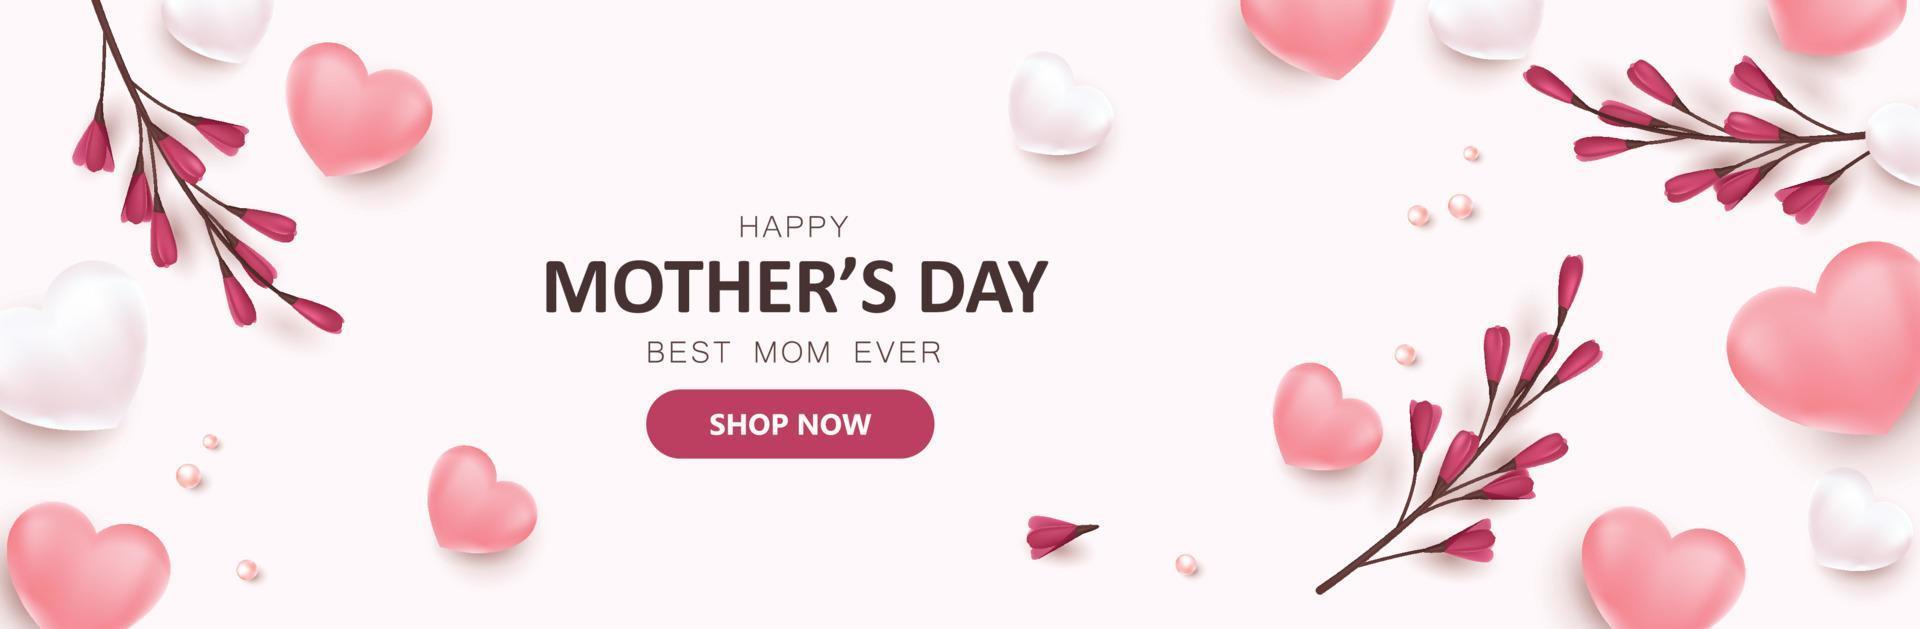 Mothers Day Promotion Sale Banner Hintergrundlayout mit herzförmigen Luftballons und Blumen vektor